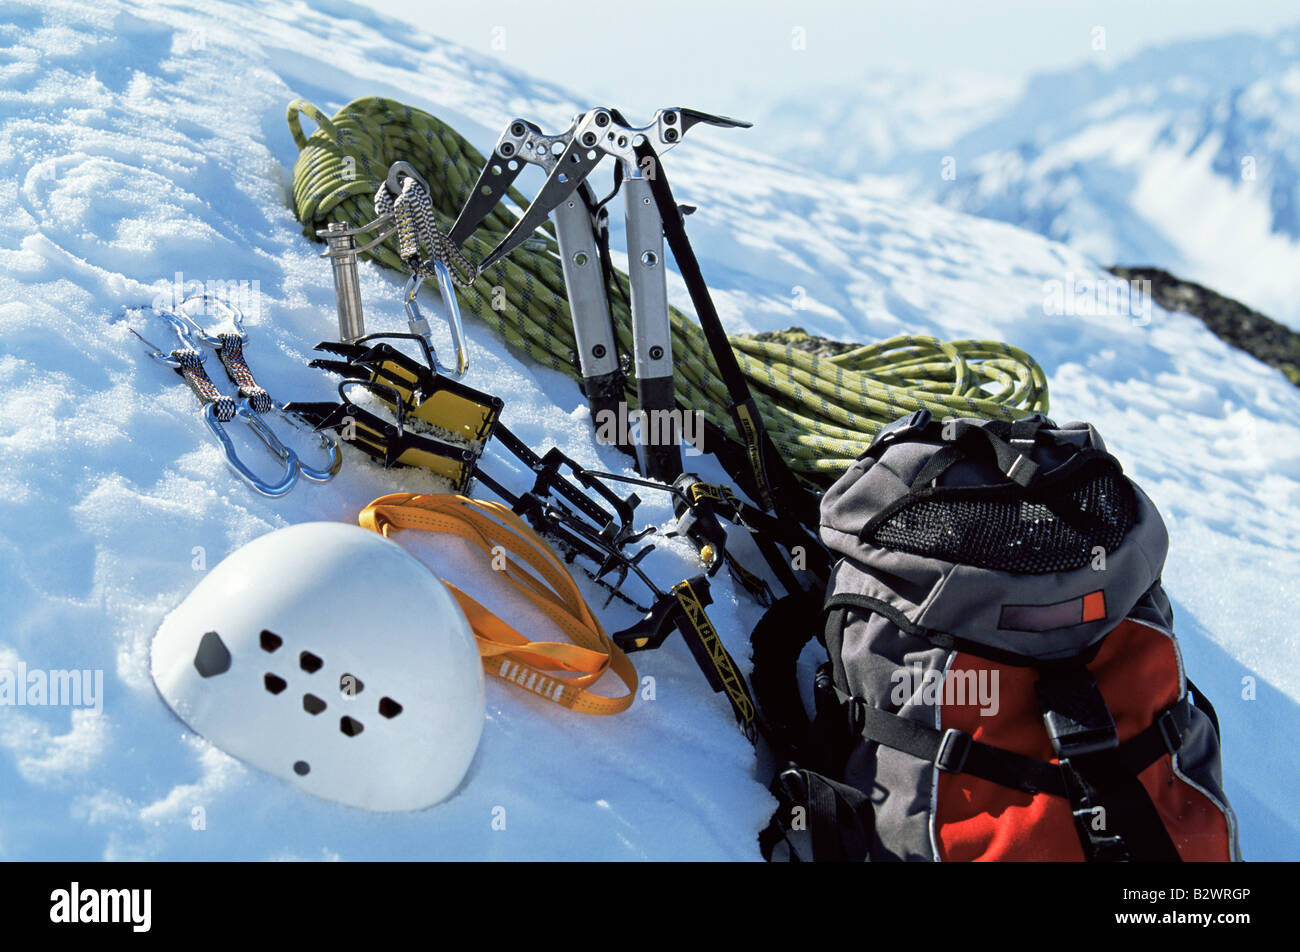 Mountain climbing equipment on a snowy mountain (selective focus) Stock Photo